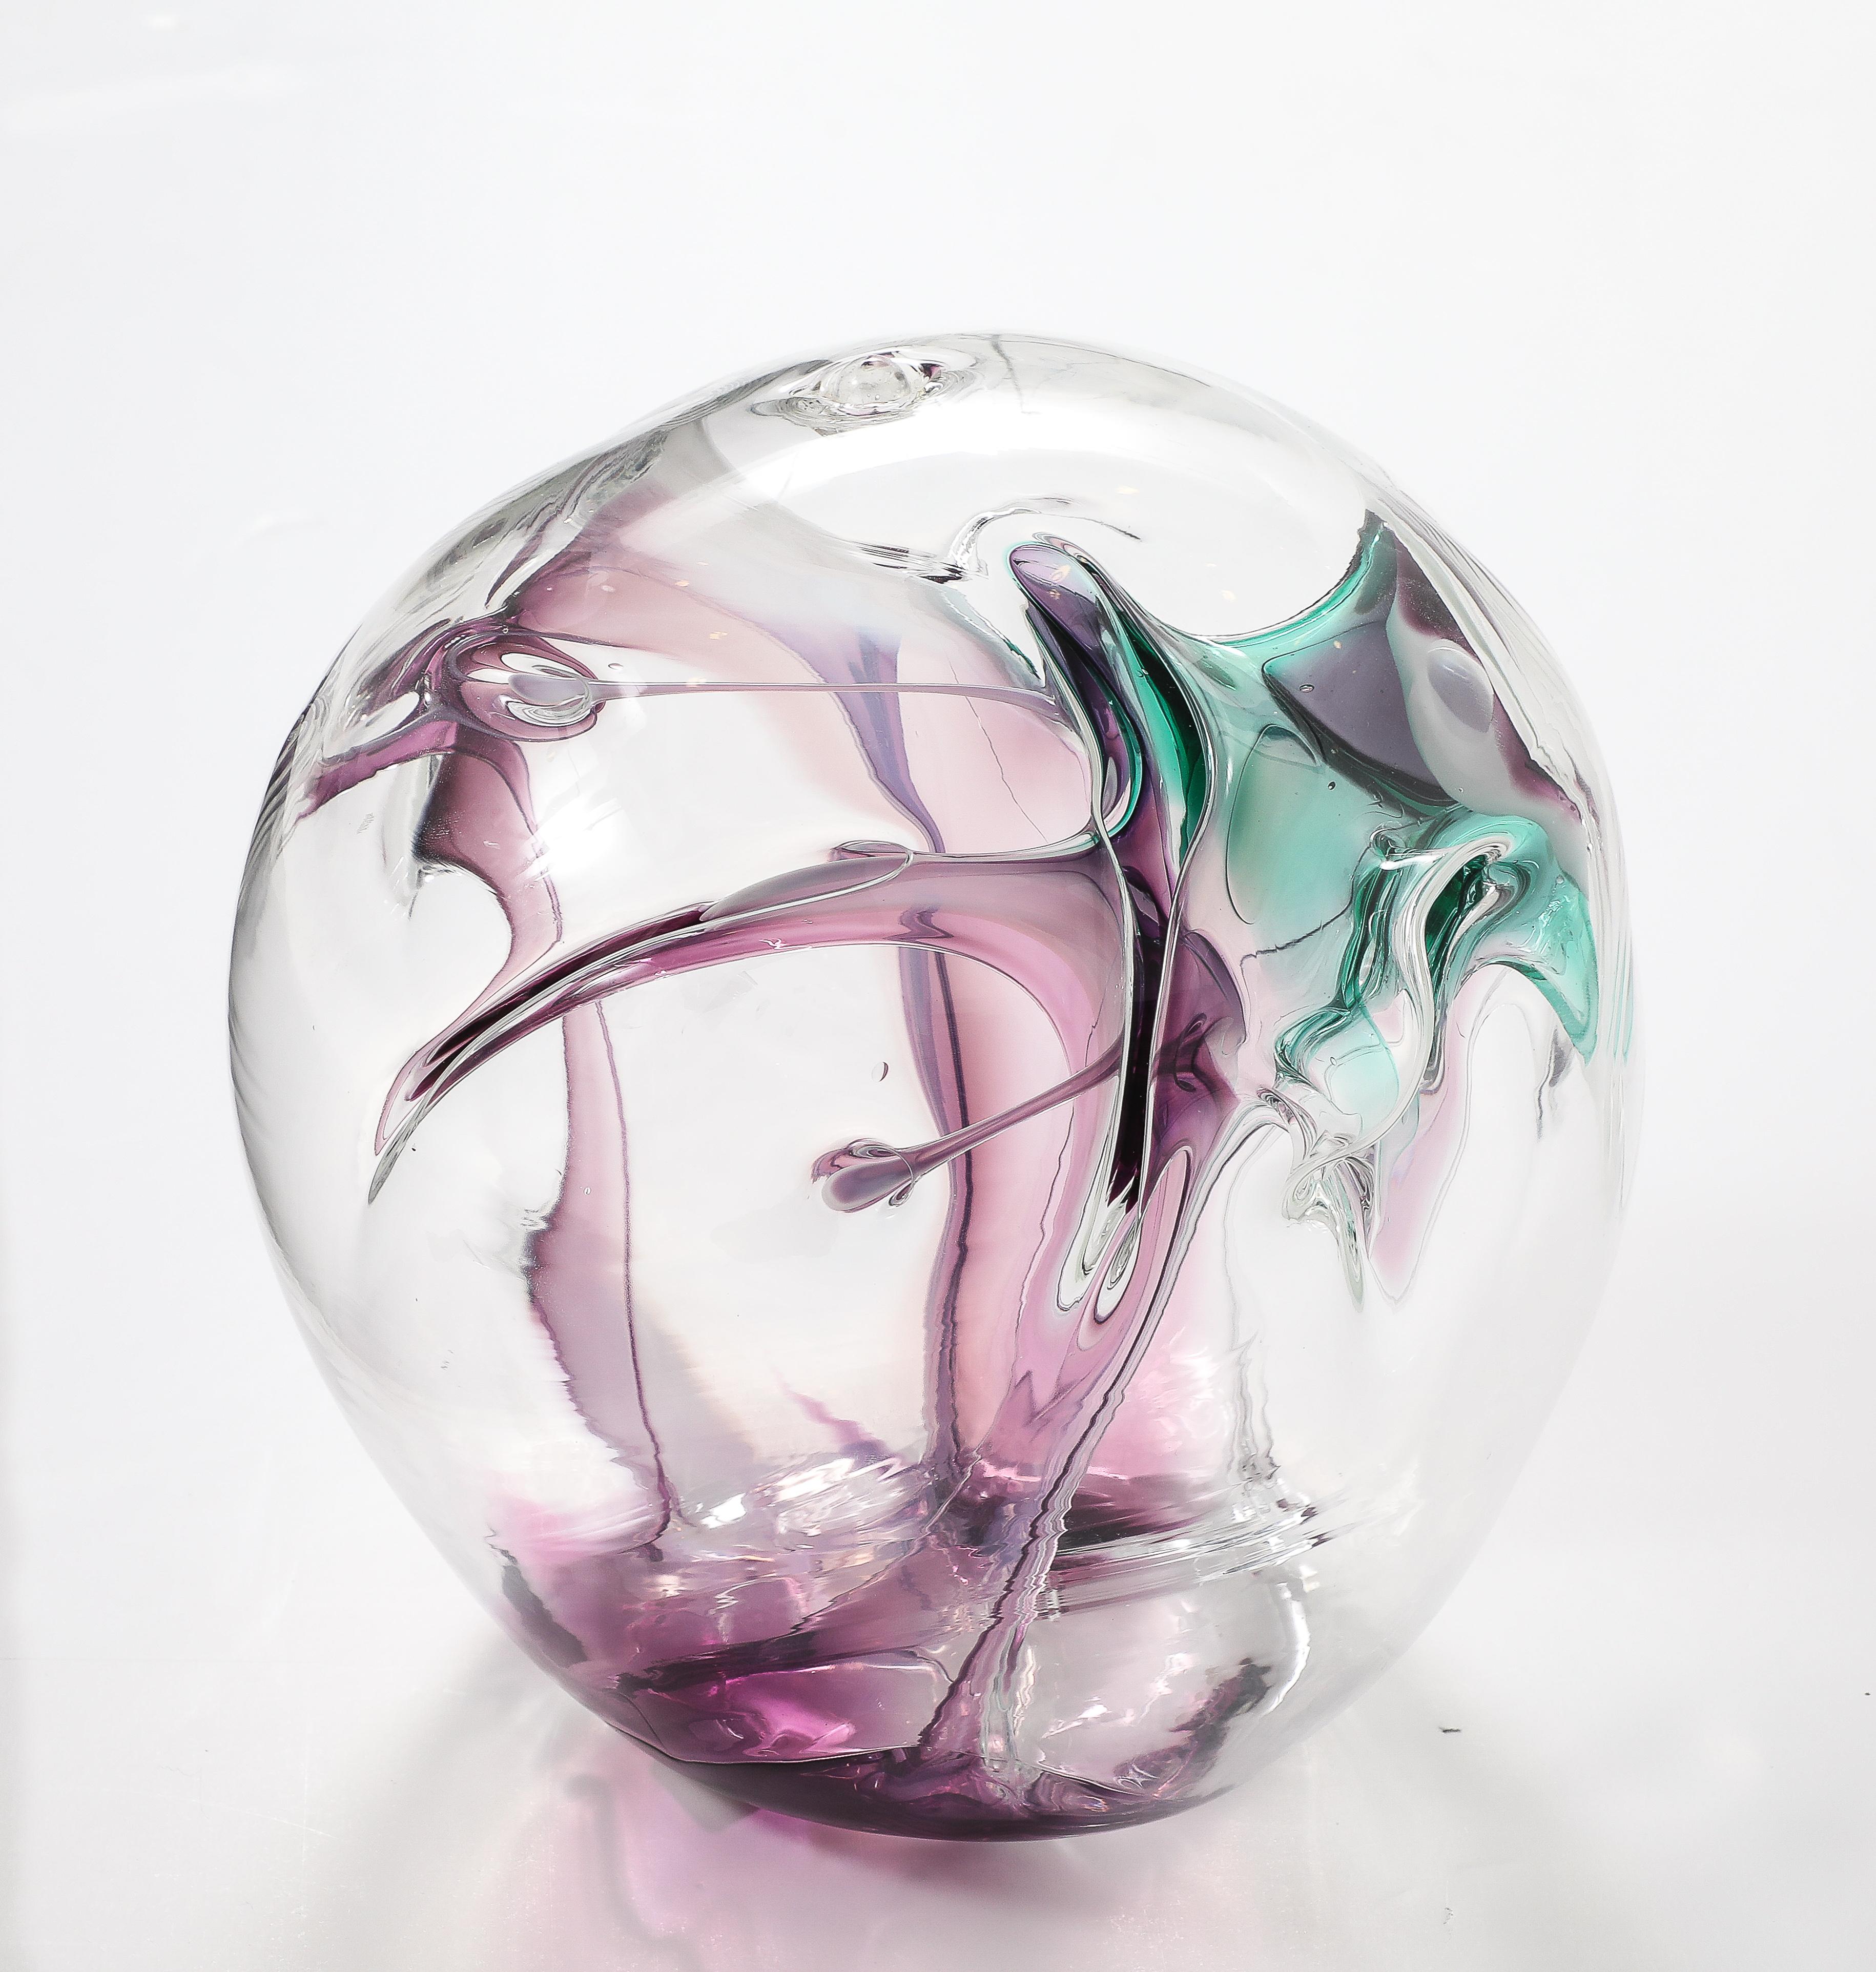 Merveilleuse sculpture orbe en verre soufflé signée et datée par PETER BRAMHALL 1998.
L'orbe a des fils de verre internes dans de magnifiques nuances de magenta et de vert.
Veuillez consulter la liste de toutes nos autres Collection S pour créer une